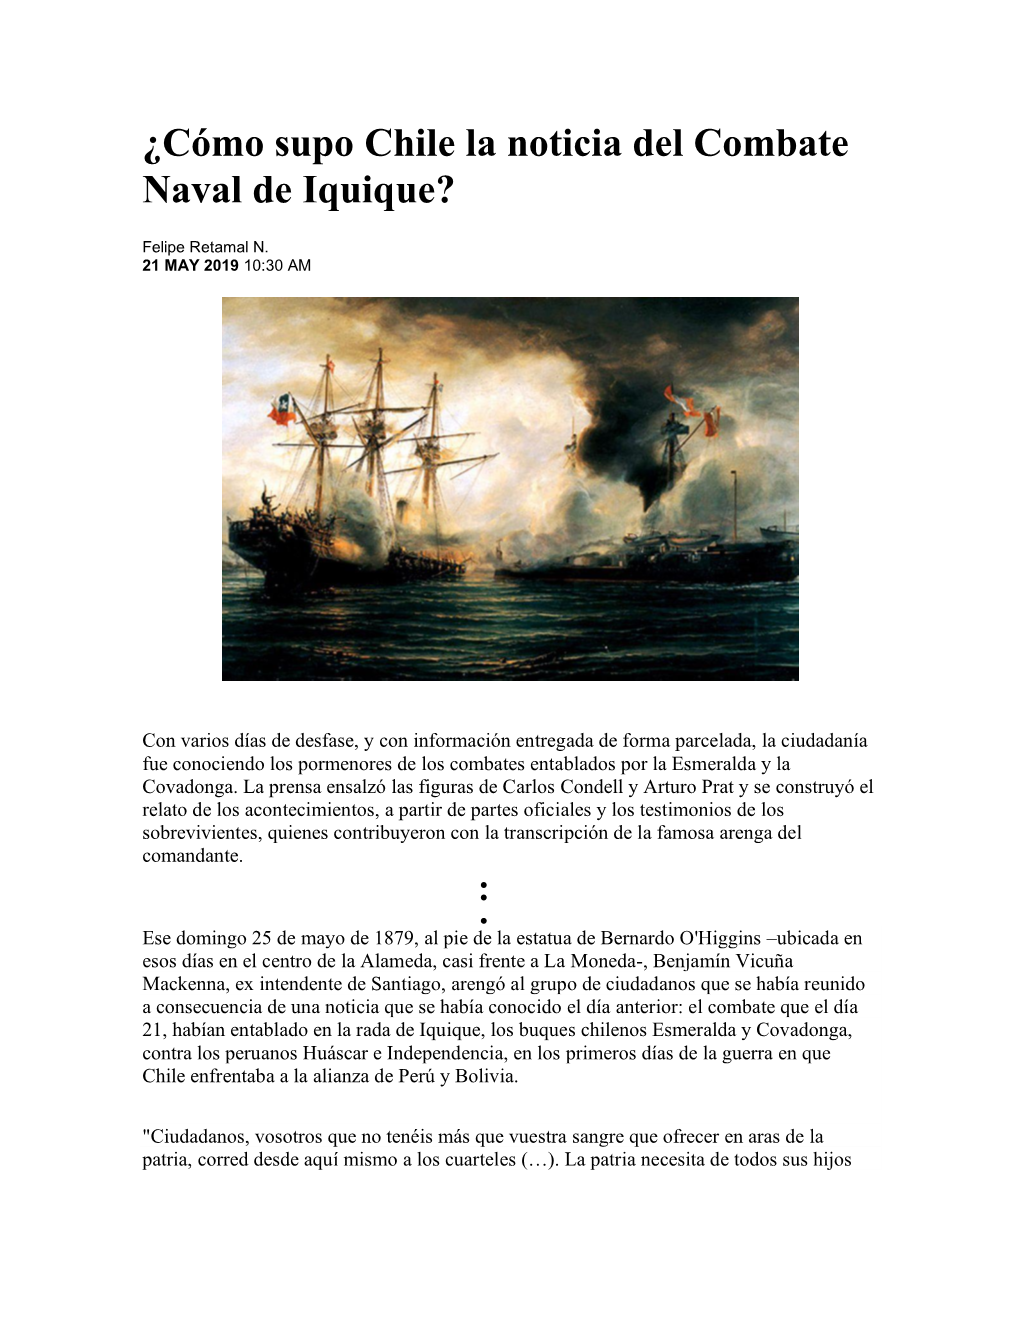 ¿Cómo Supo Chile La Noticia Del Combate Naval De Iquique?